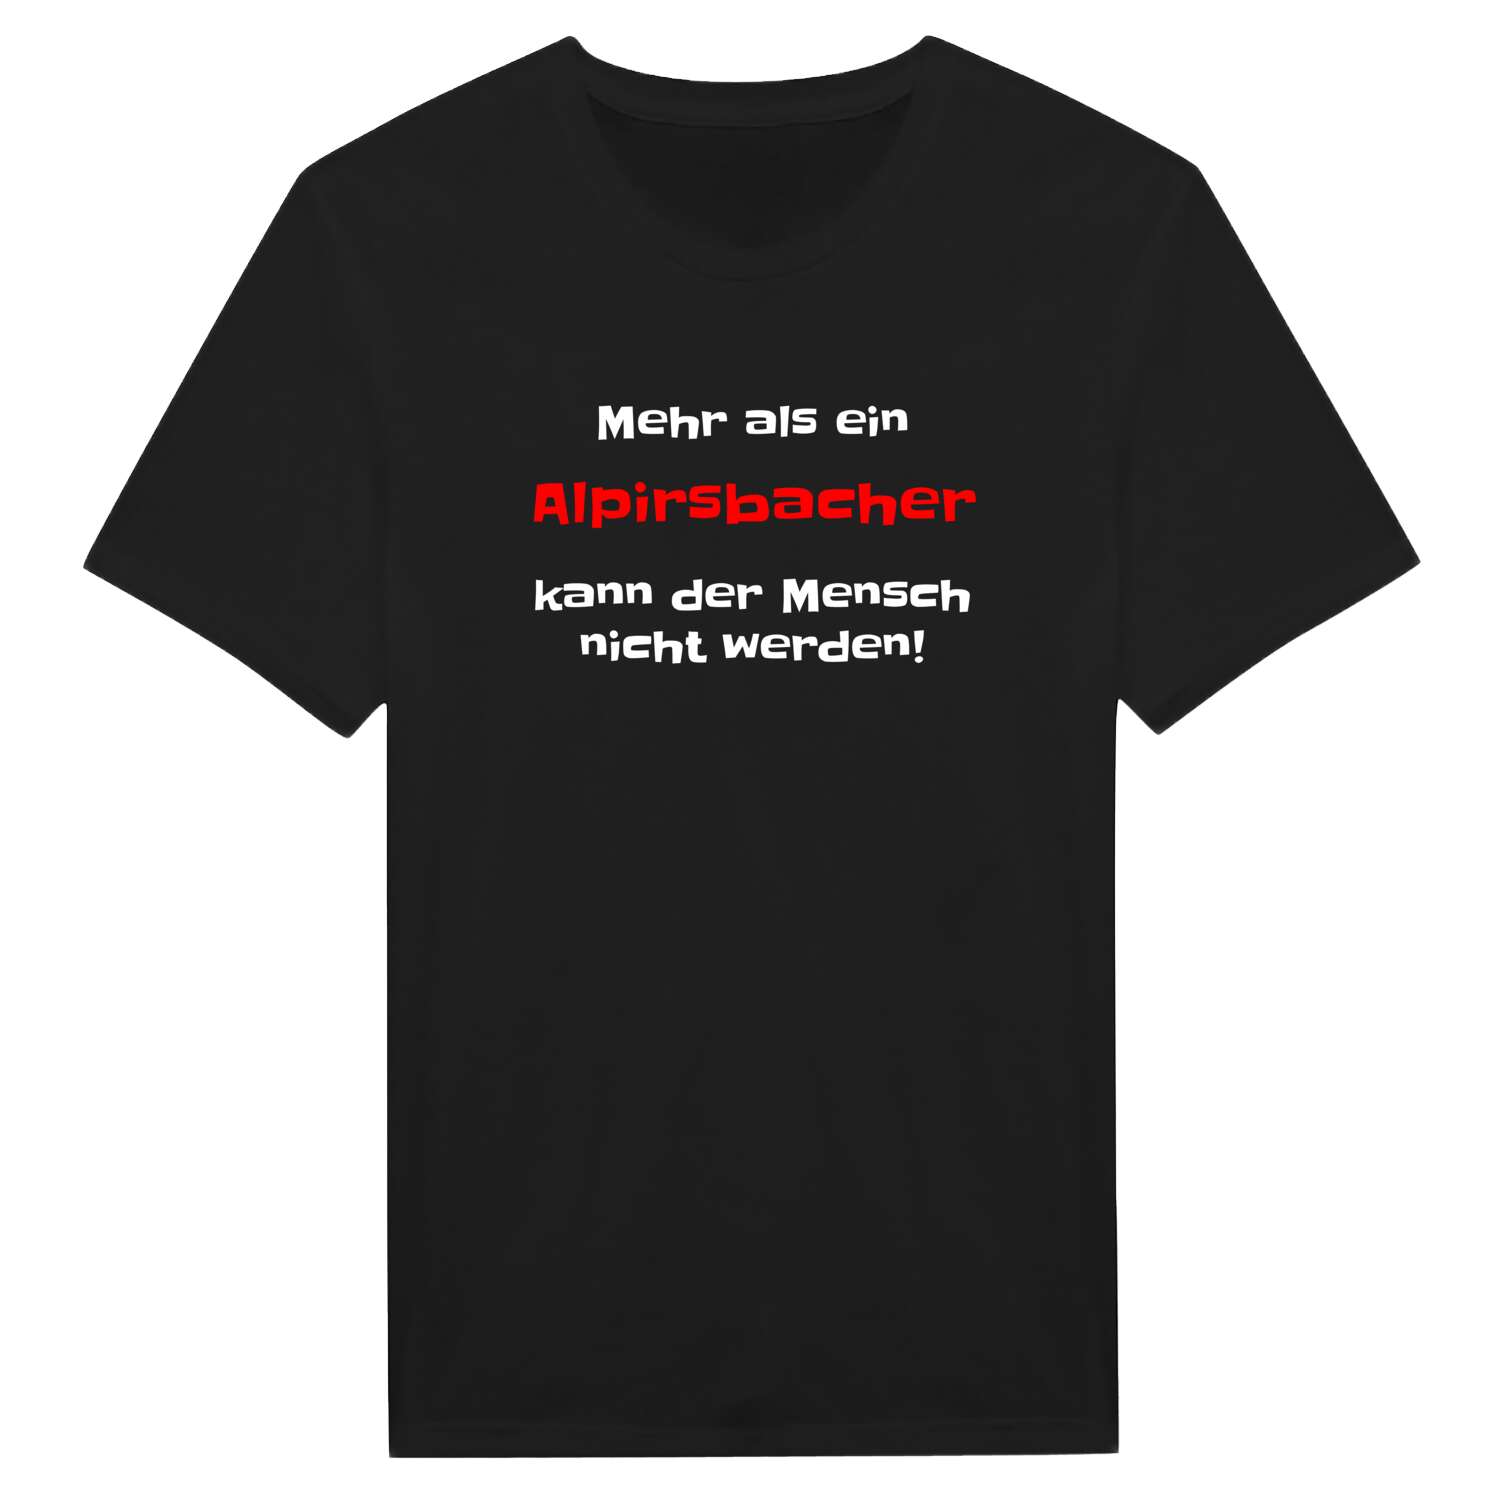 Alpirsbach T-Shirt »Mehr als ein«